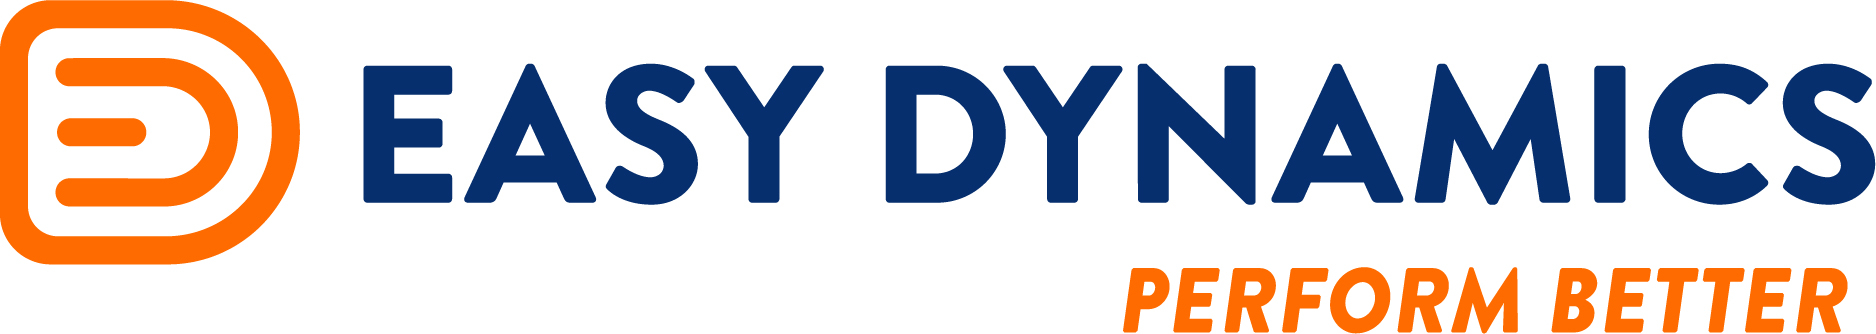 Easy Dynamics  logo